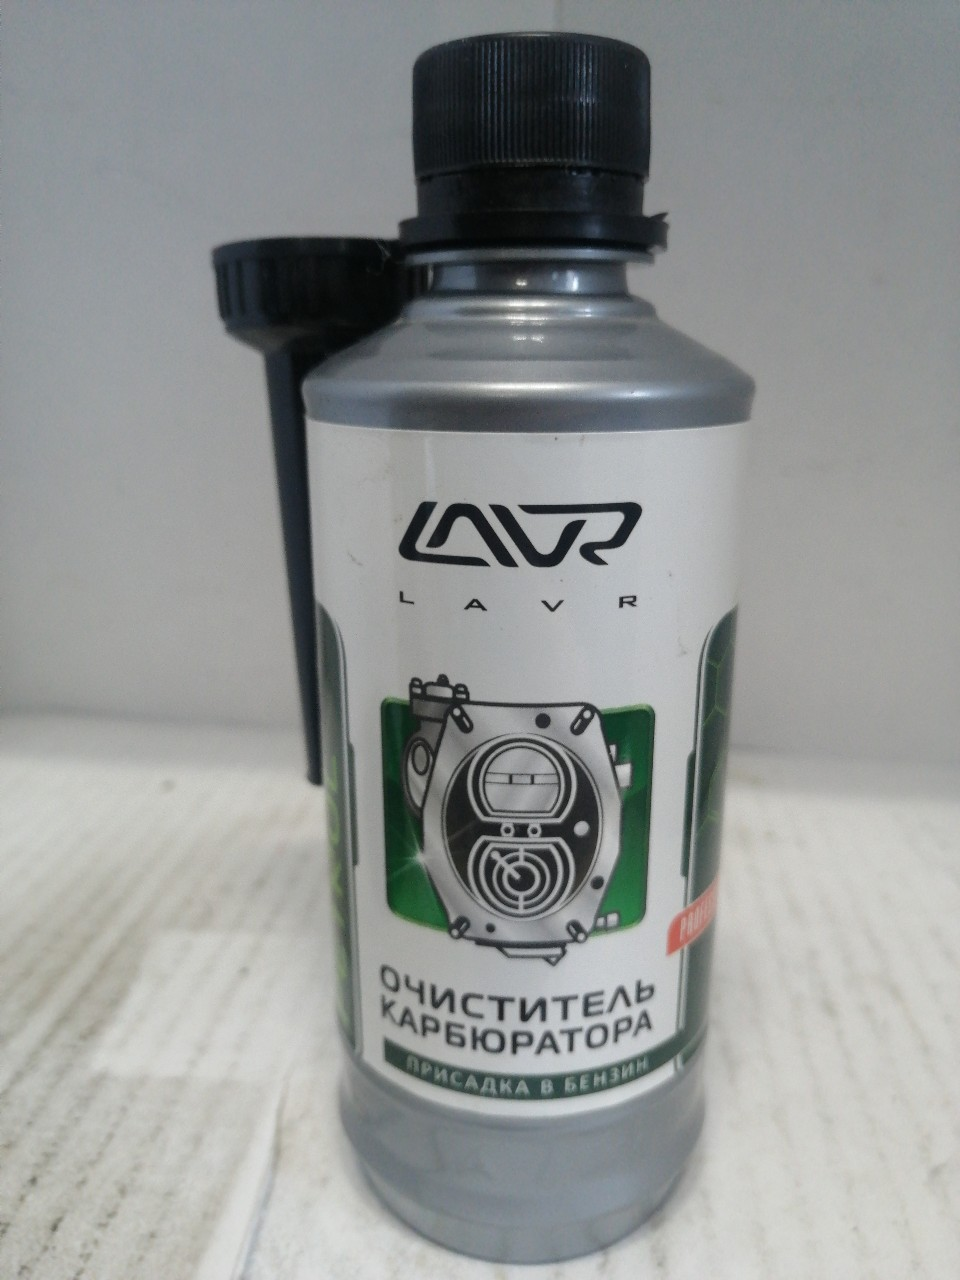 Купить запчасть LAVR - LN2108 Очиститель карбюратора LAVR Carburetor Cleaner Petrol присадка в бензин (на 40-60л)с насадкой (310мл